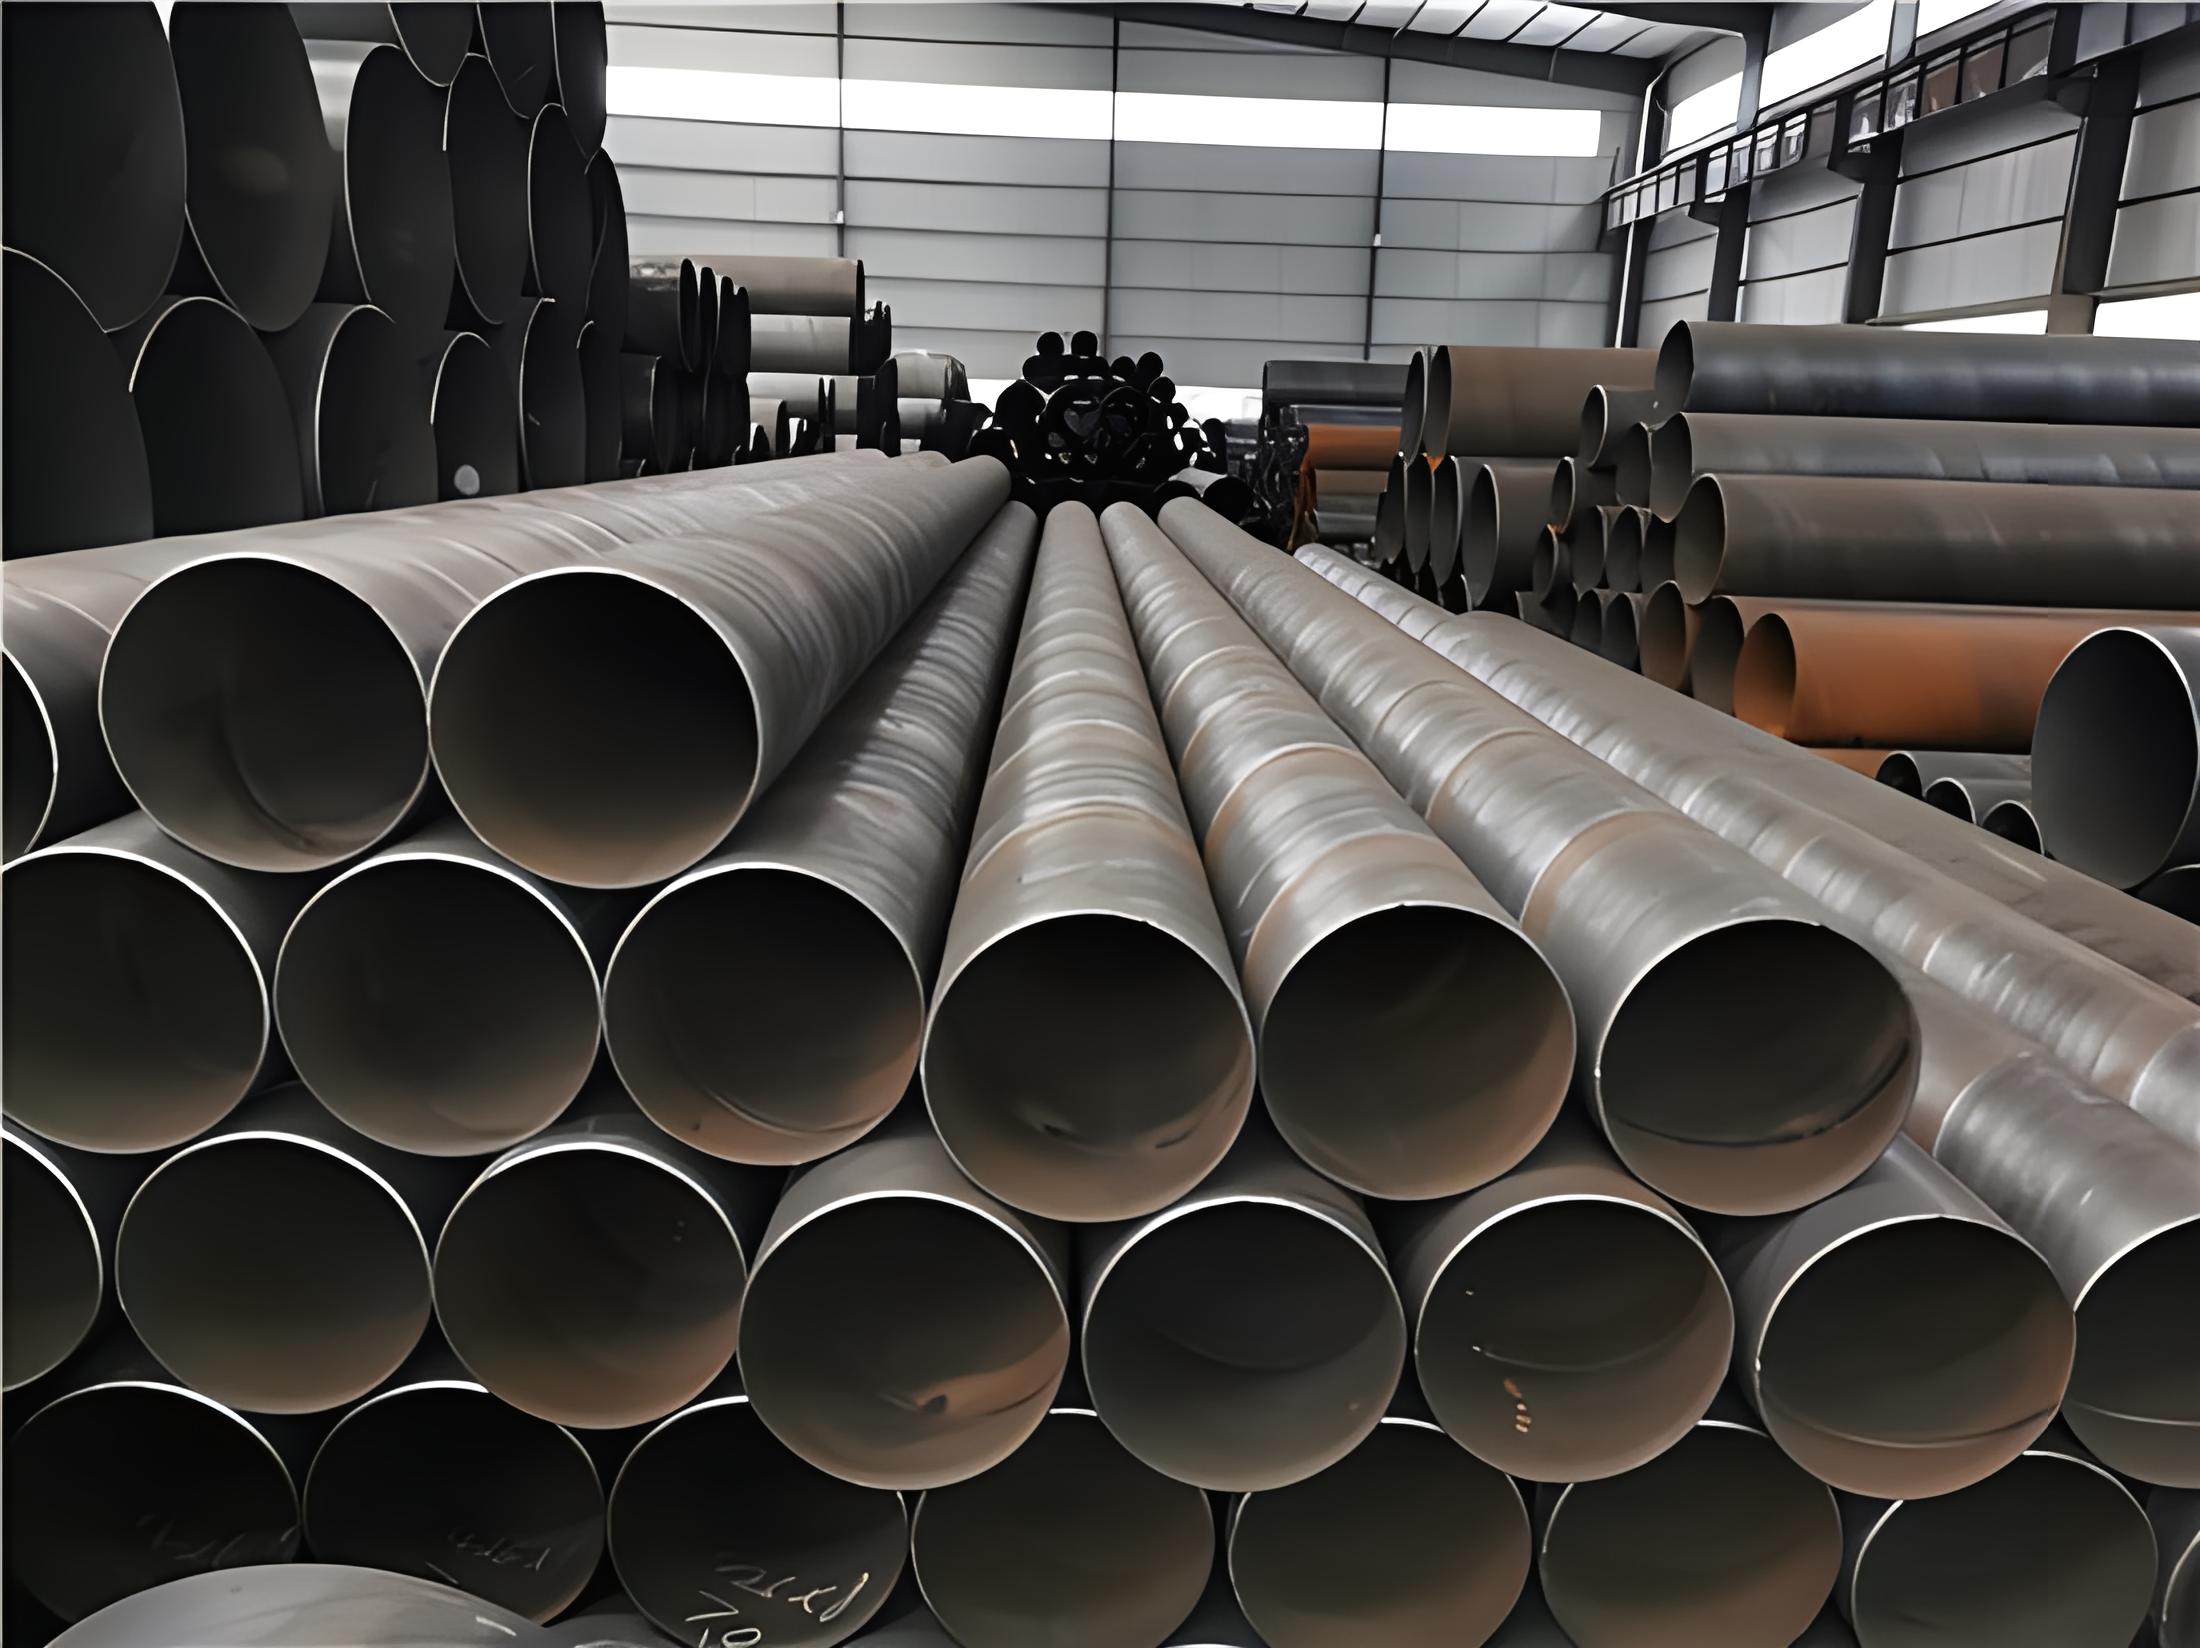 枣庄螺旋钢管现代工业建设的坚实基石